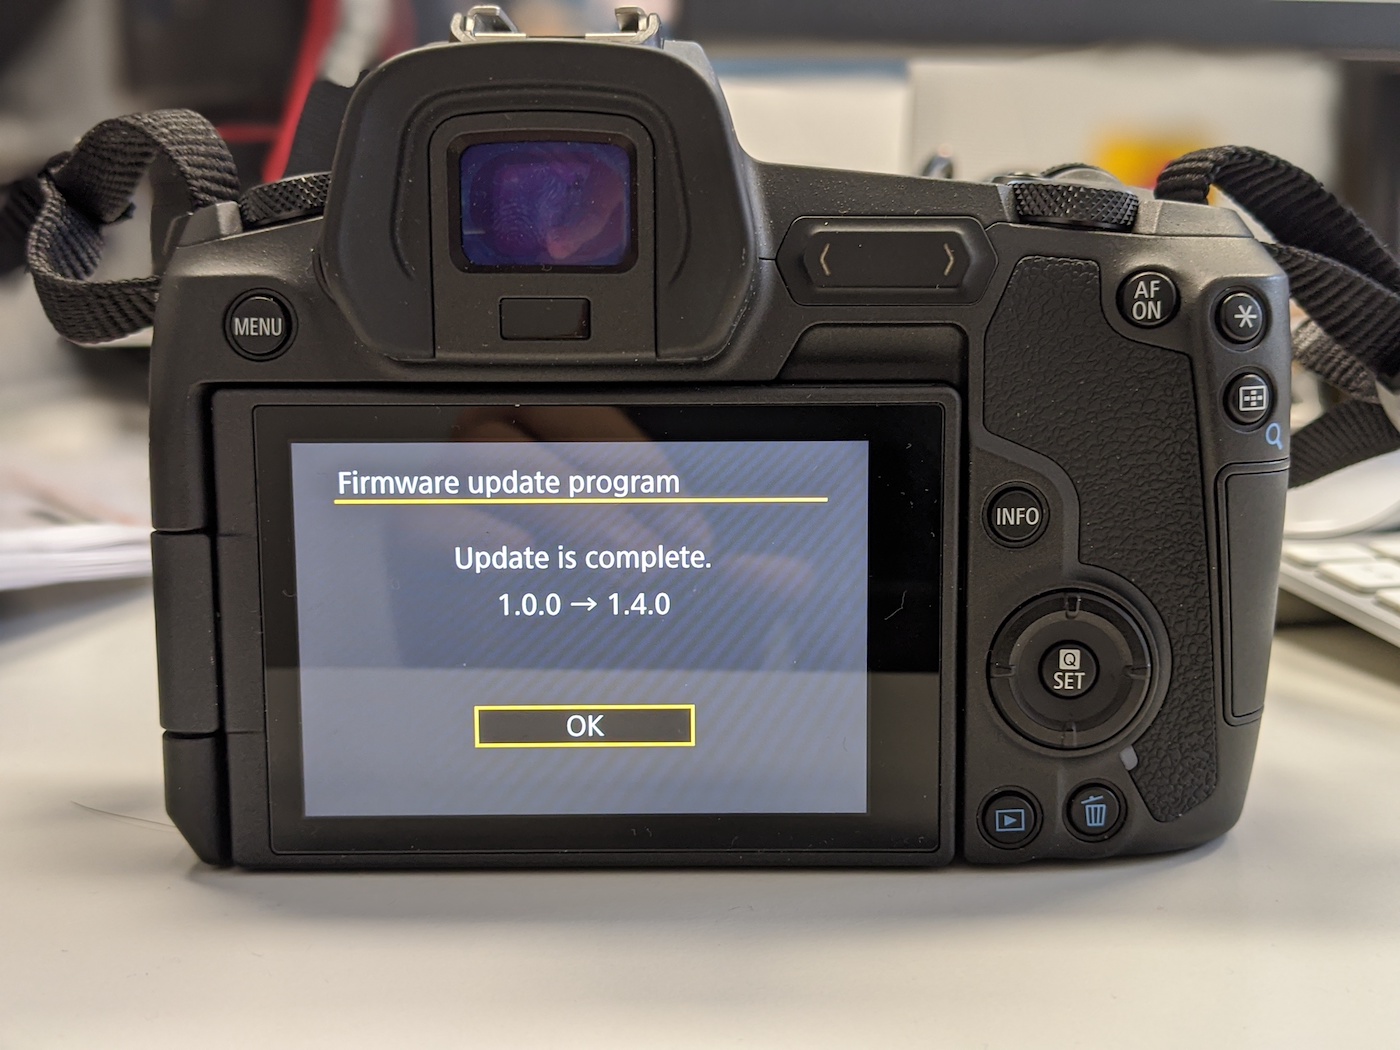 Prise en main du Canon EOS R nouveau firmware 1.4.0 pour un autofocus